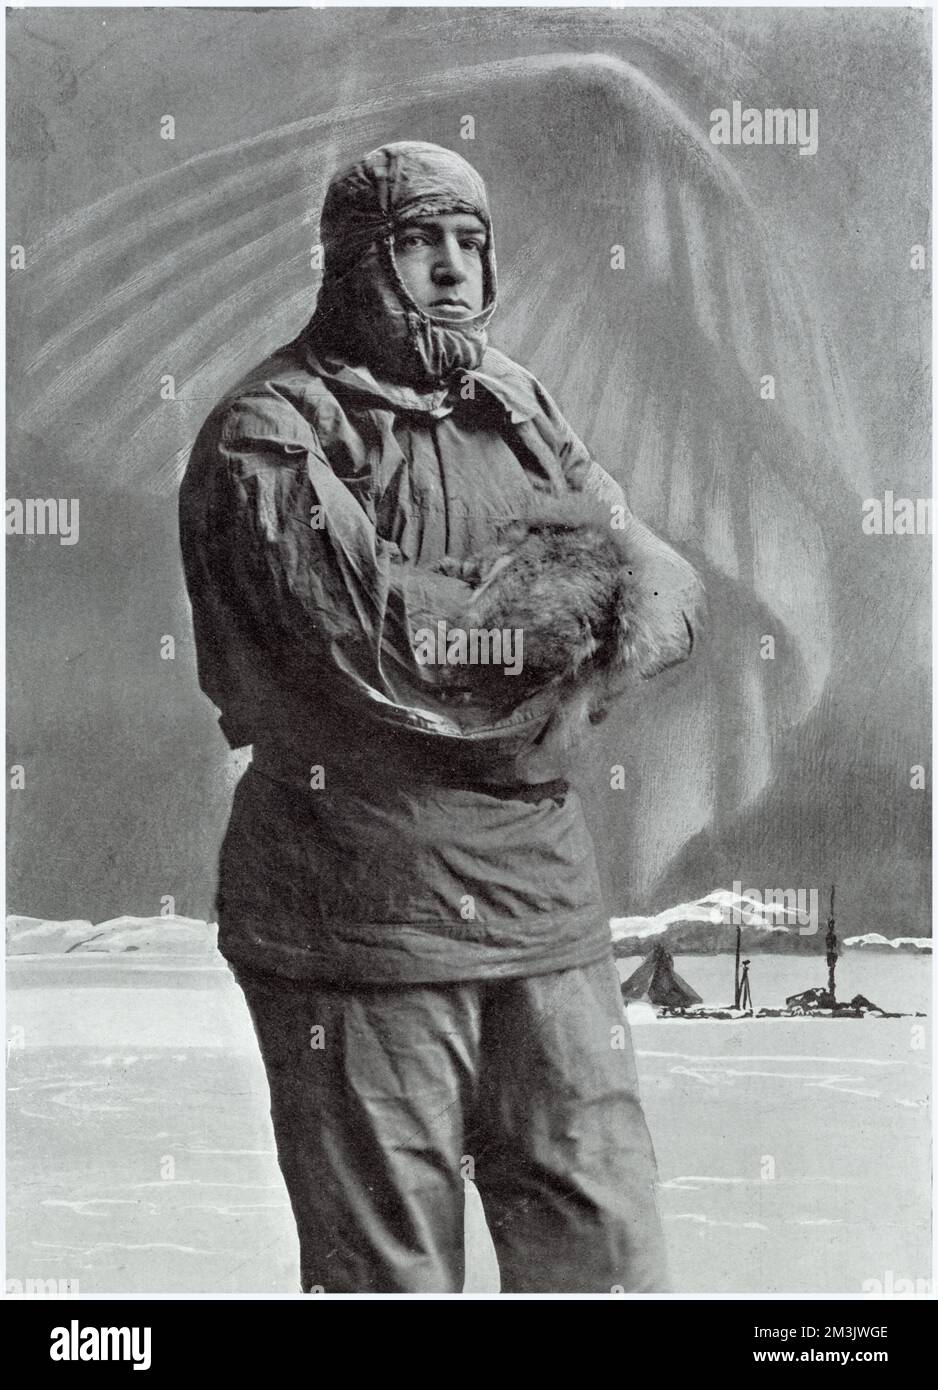 Sir Ernest Henry Shackleton (1874-1922), britischer Forscher, für die Antarktis gekleidet. Shackleton machte während seiner Karriere vier Expeditionen zum Südpol. Dieses Foto erinnert an seinen zweiten, als er 97 Meilen vom Südpol entfernt war, ein Rekord. Datum: 1909 Stockfoto